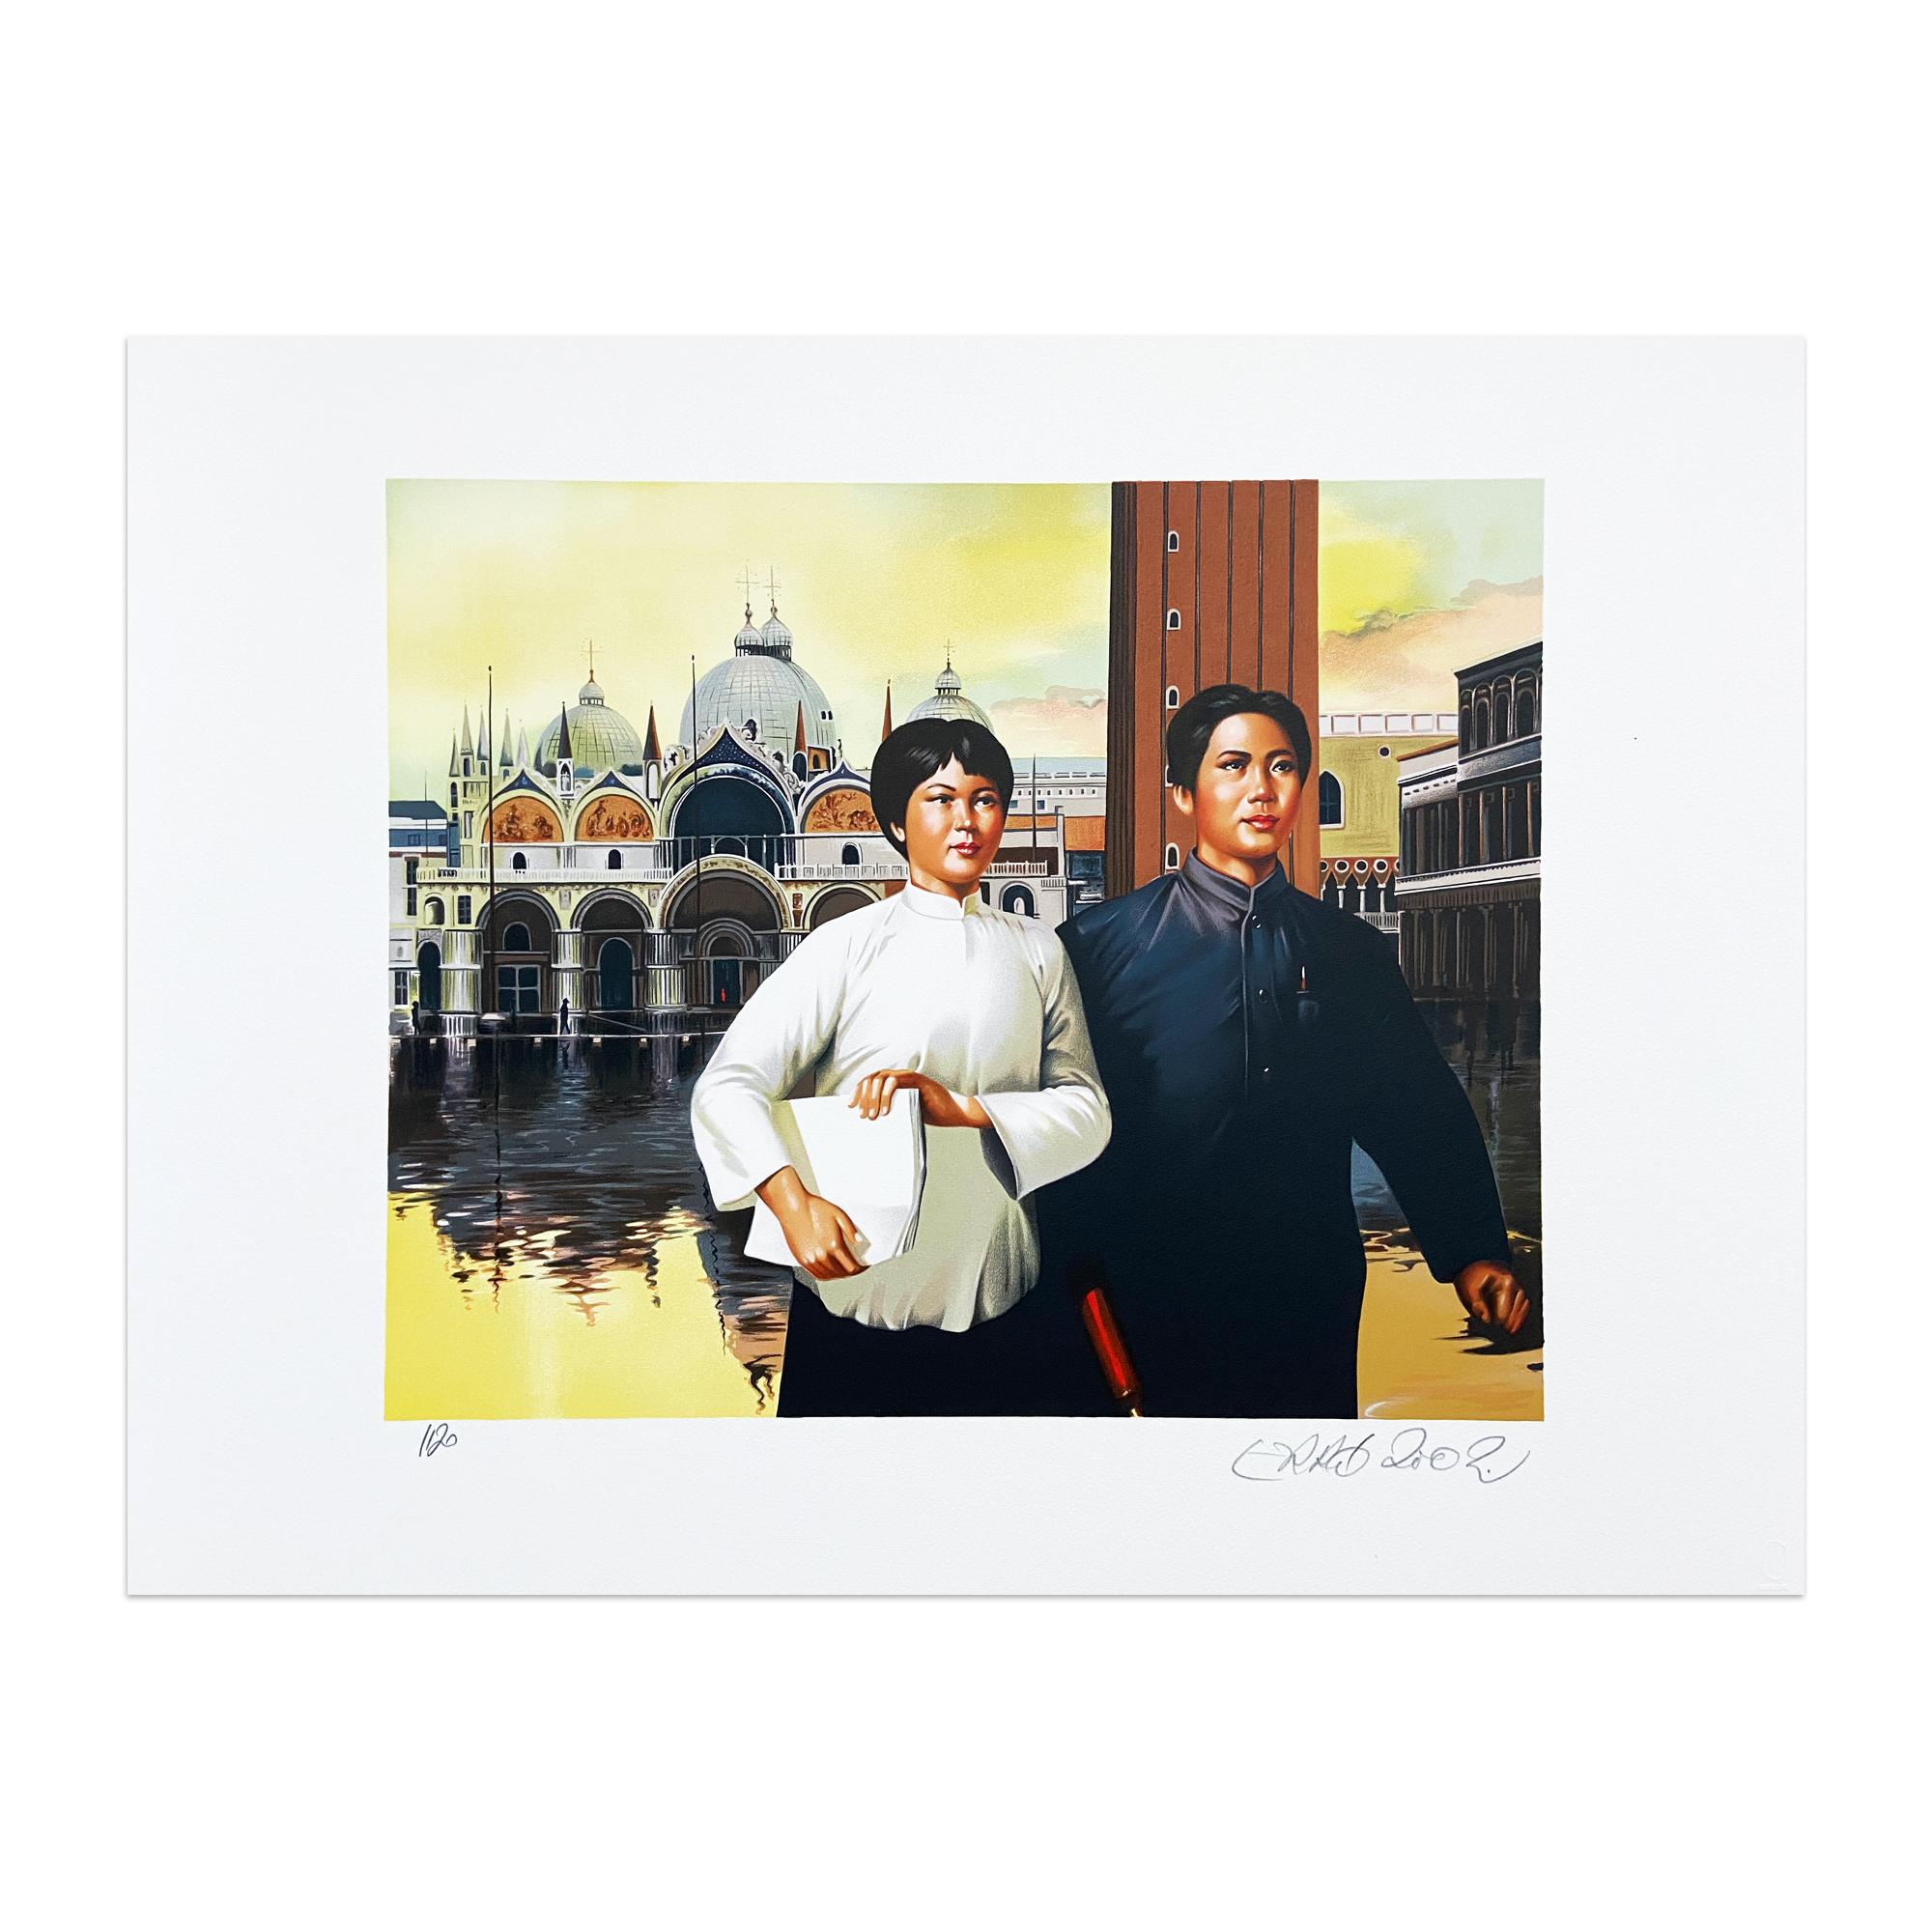 Gudmundur Gudmundsson, alias Erró (Isländer, geb. 1932)
Der letzte Besuch von Mao in Venedig, 2002
Medium: Mappe mit 12 Farblithographien auf Papier (in roter Stoffmappe)
Bildmaße: jeweils 42,5 x 32,5 cm
Maße der Blätter: je 59 x 45 cm
Auflage: 120